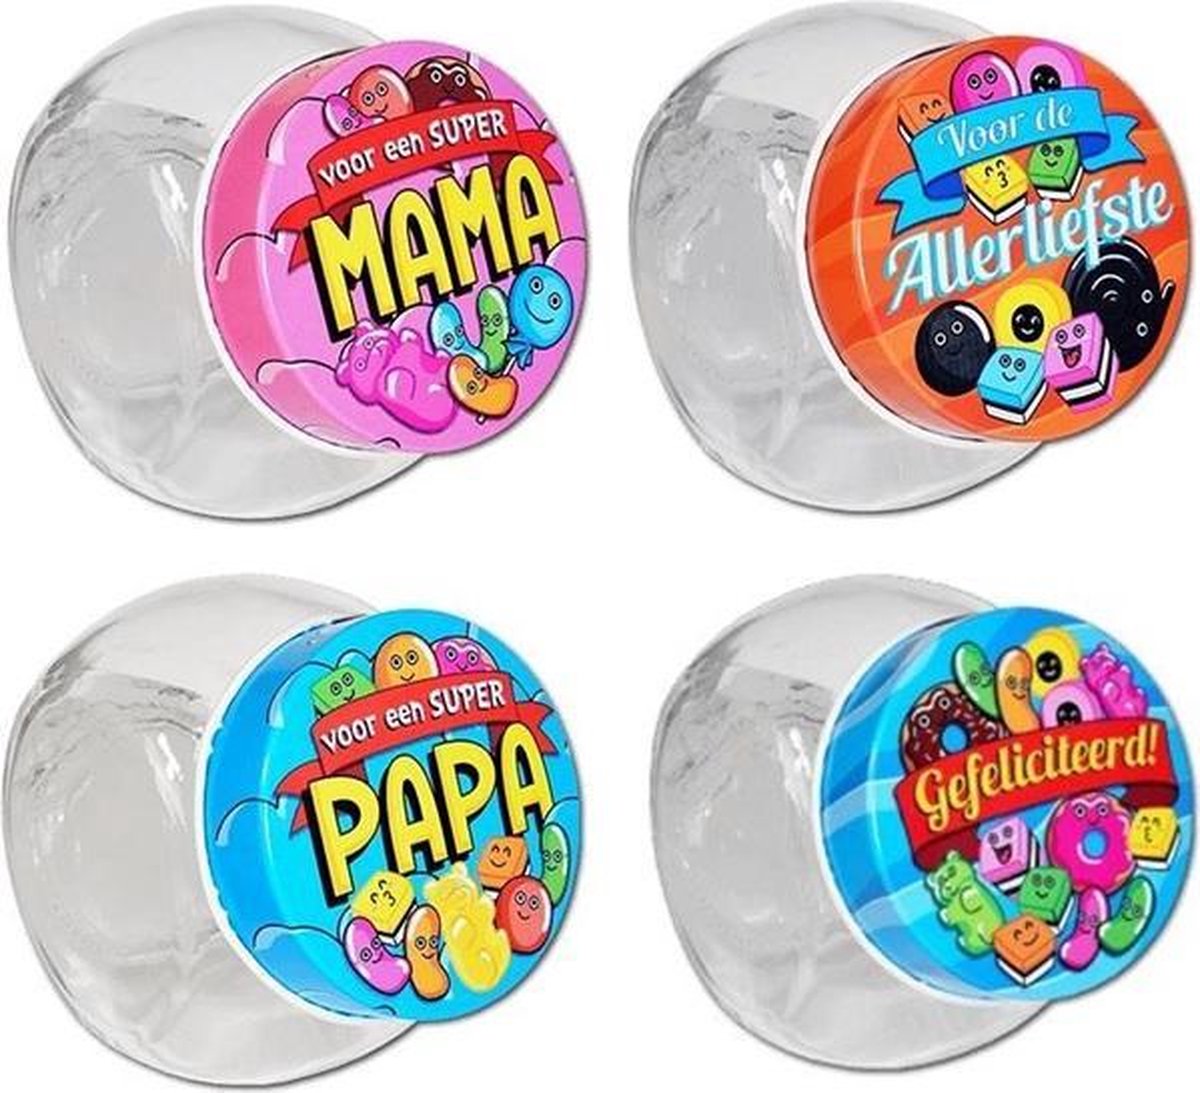 Partij van 16 snoeppotjes candy jars paperdreams - mama - papa - gefeliciteerd - allerliefste - snoep - snoeppot - glas - direct leverbaar - nieuw - candy - hersluitbaar